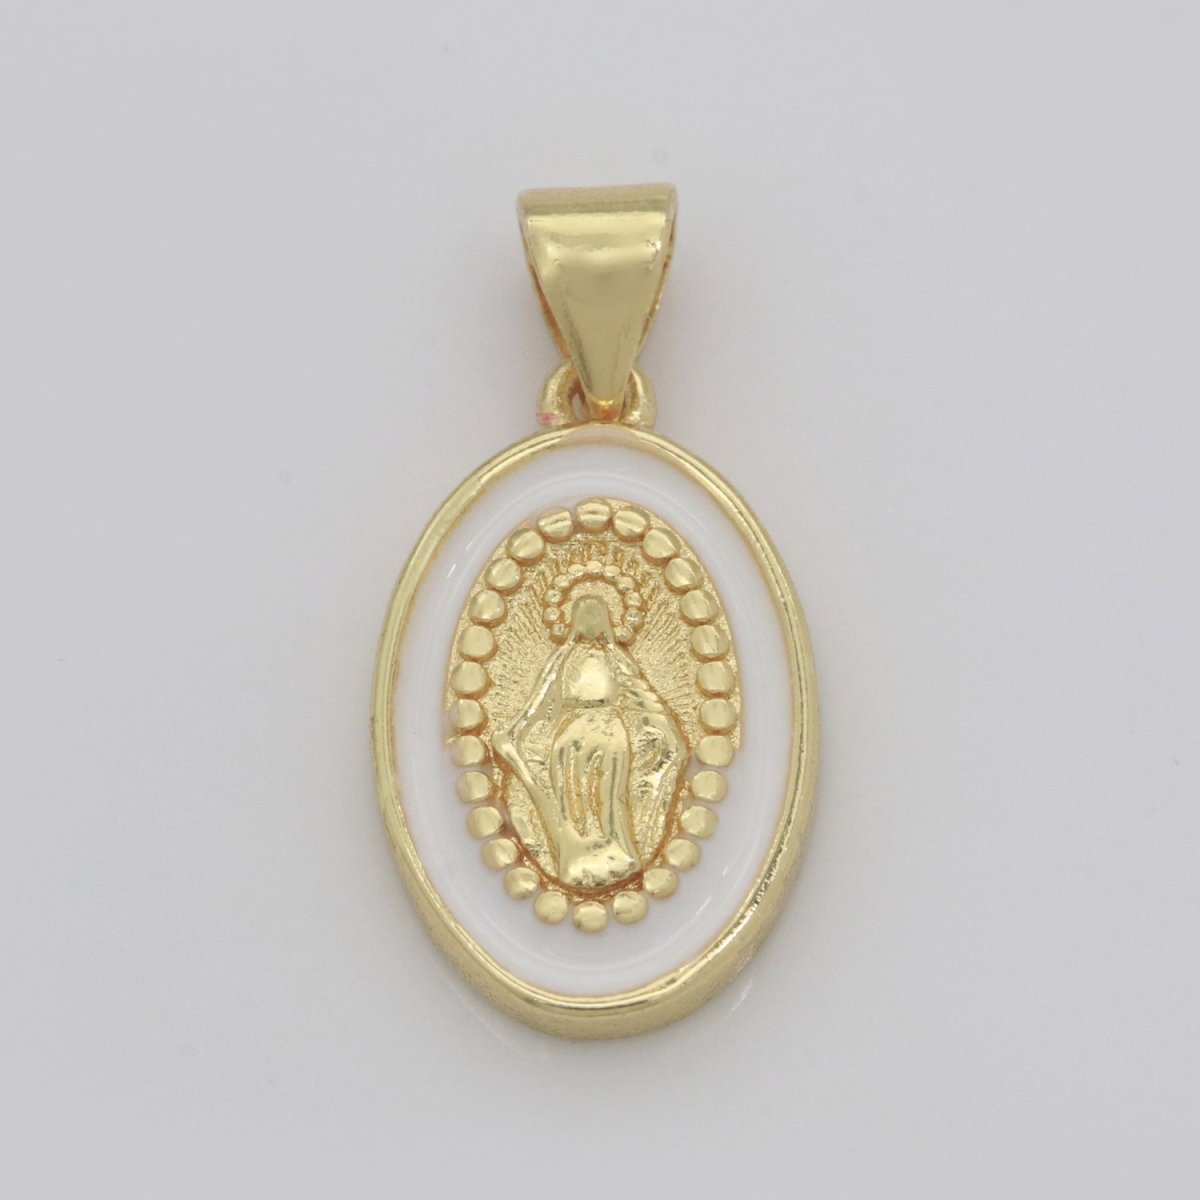 Dainty Miraculous Lady Charm gold medallion Charm, gold filled Virgin Mary religious medal Saint Pendant Religious Coin Catholic Enamel Jewelry N-1373 N-1374 N-1375 N-1376 N-1377 N-1378 N-1379 N-1380 N-1381 N-1382 - DLUXCA